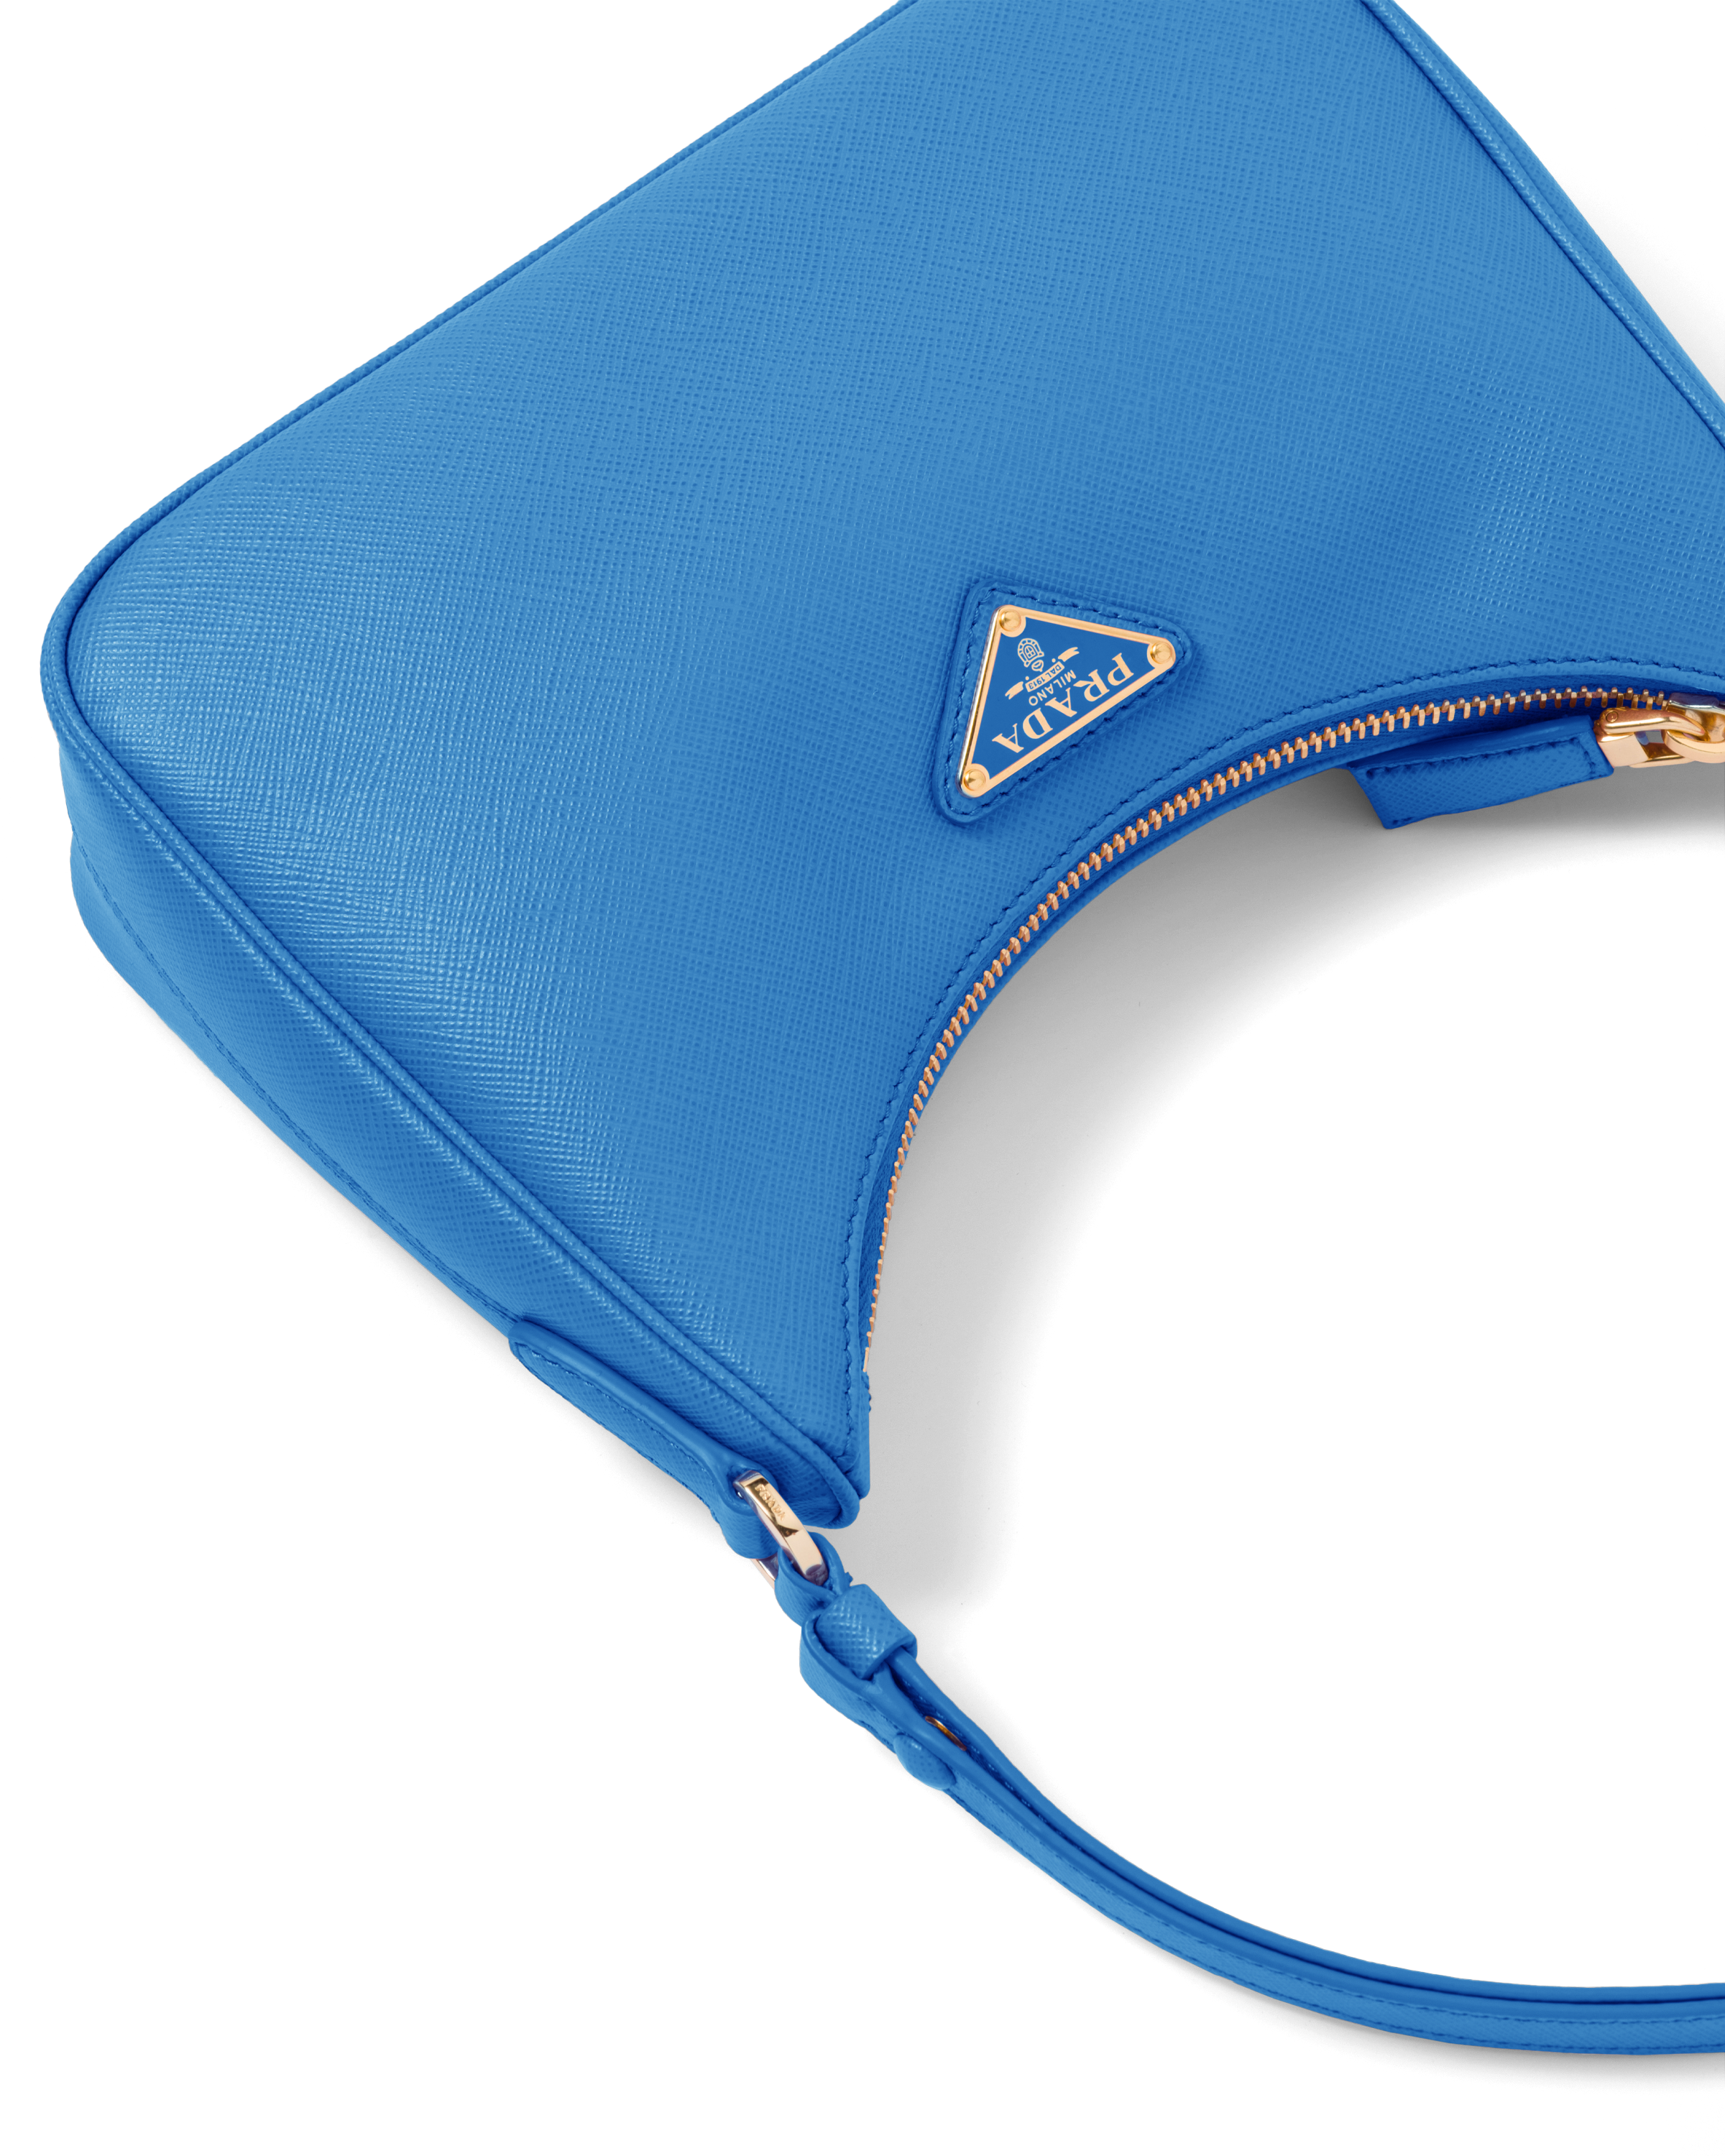 PRADA - Nylon and Saffiano Leather Mini Bag